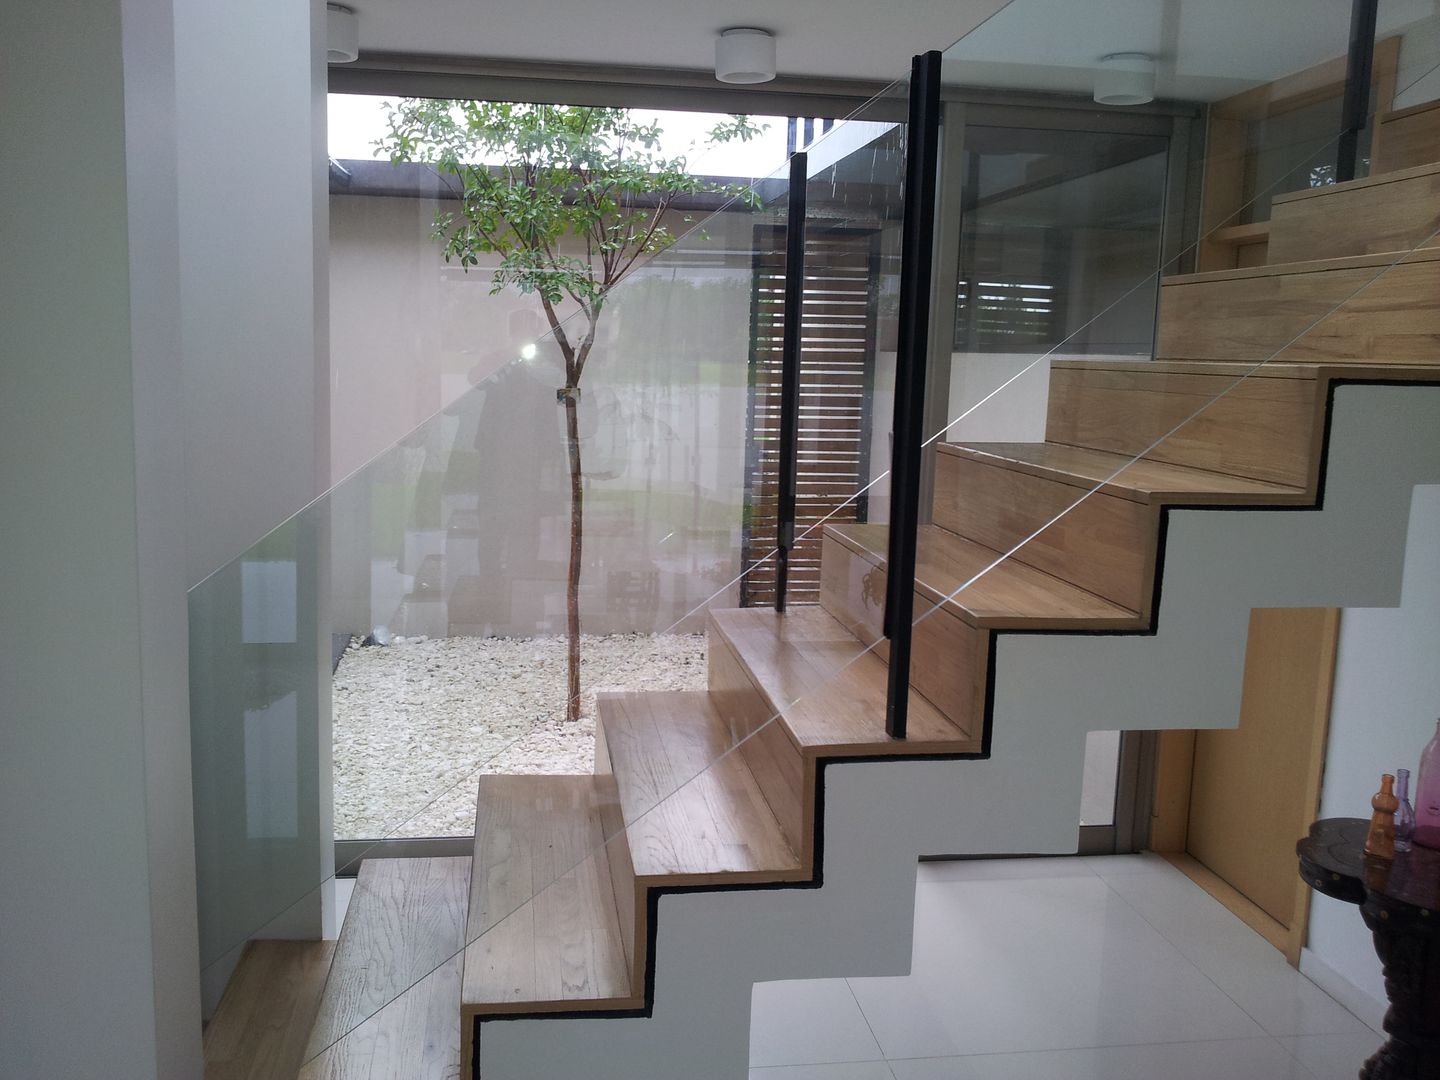 Lagos del Norte, estudio|44 estudio|44 Pasillos, vestíbulos y escaleras modernos